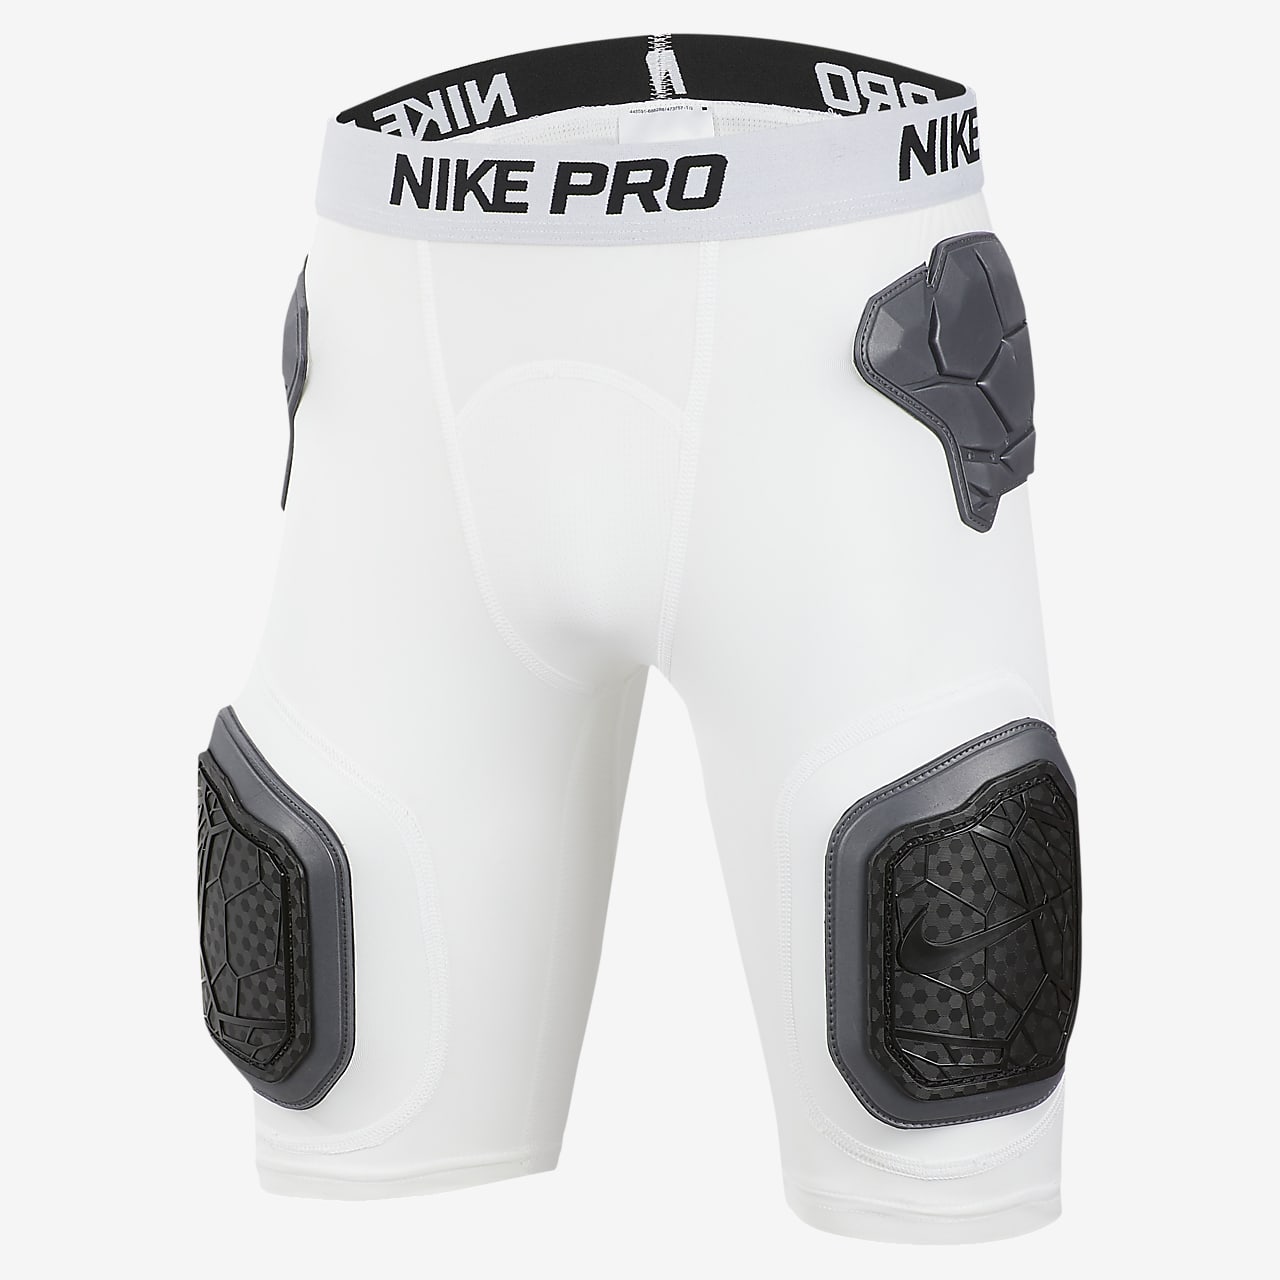 nike pro combat shorts